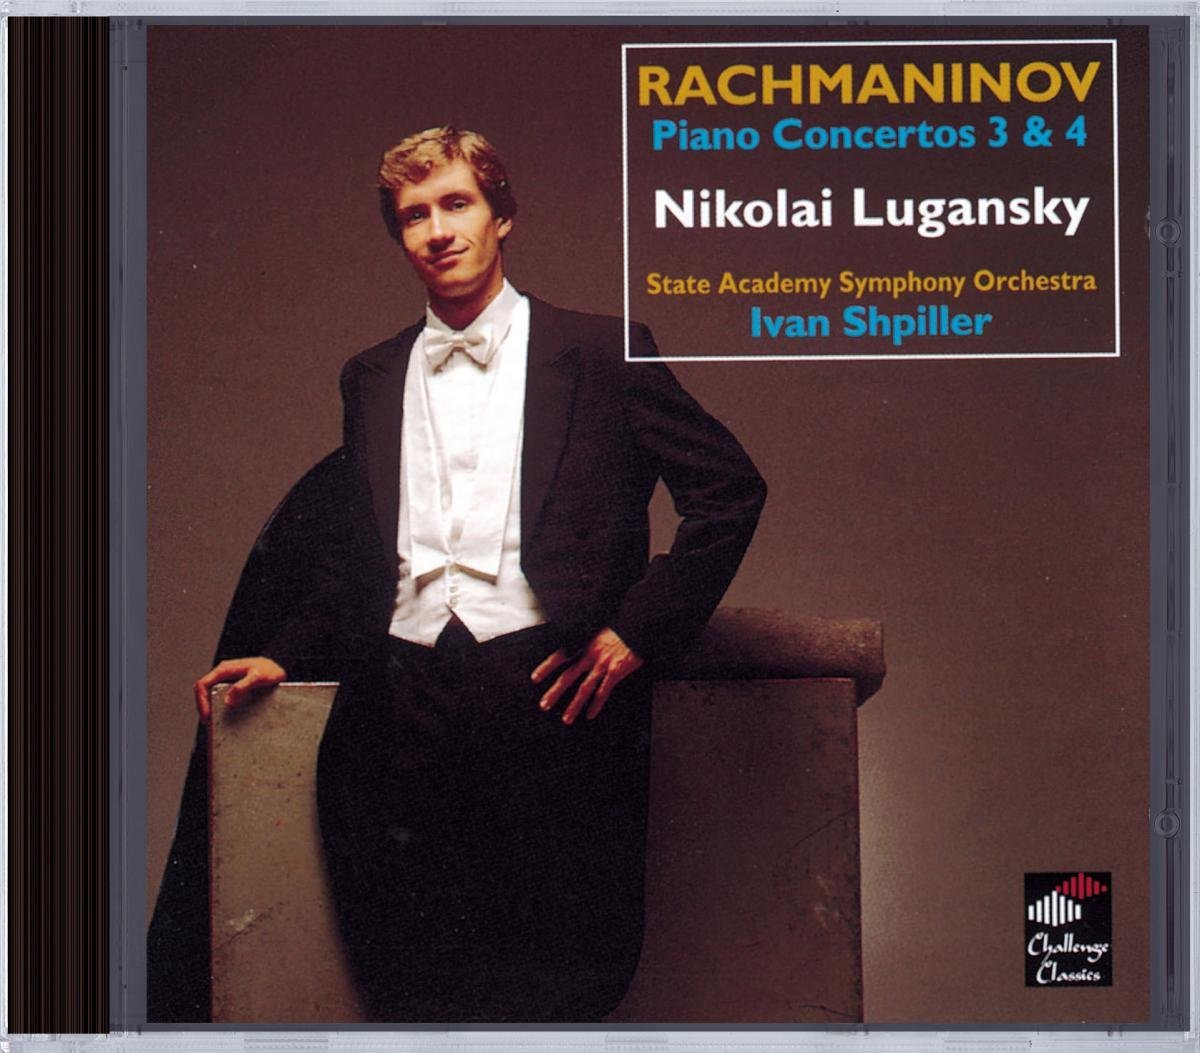 Rachmaninov - Piano Concertos 3 & 4 | Nikolai Lugansky, Rachmaninov